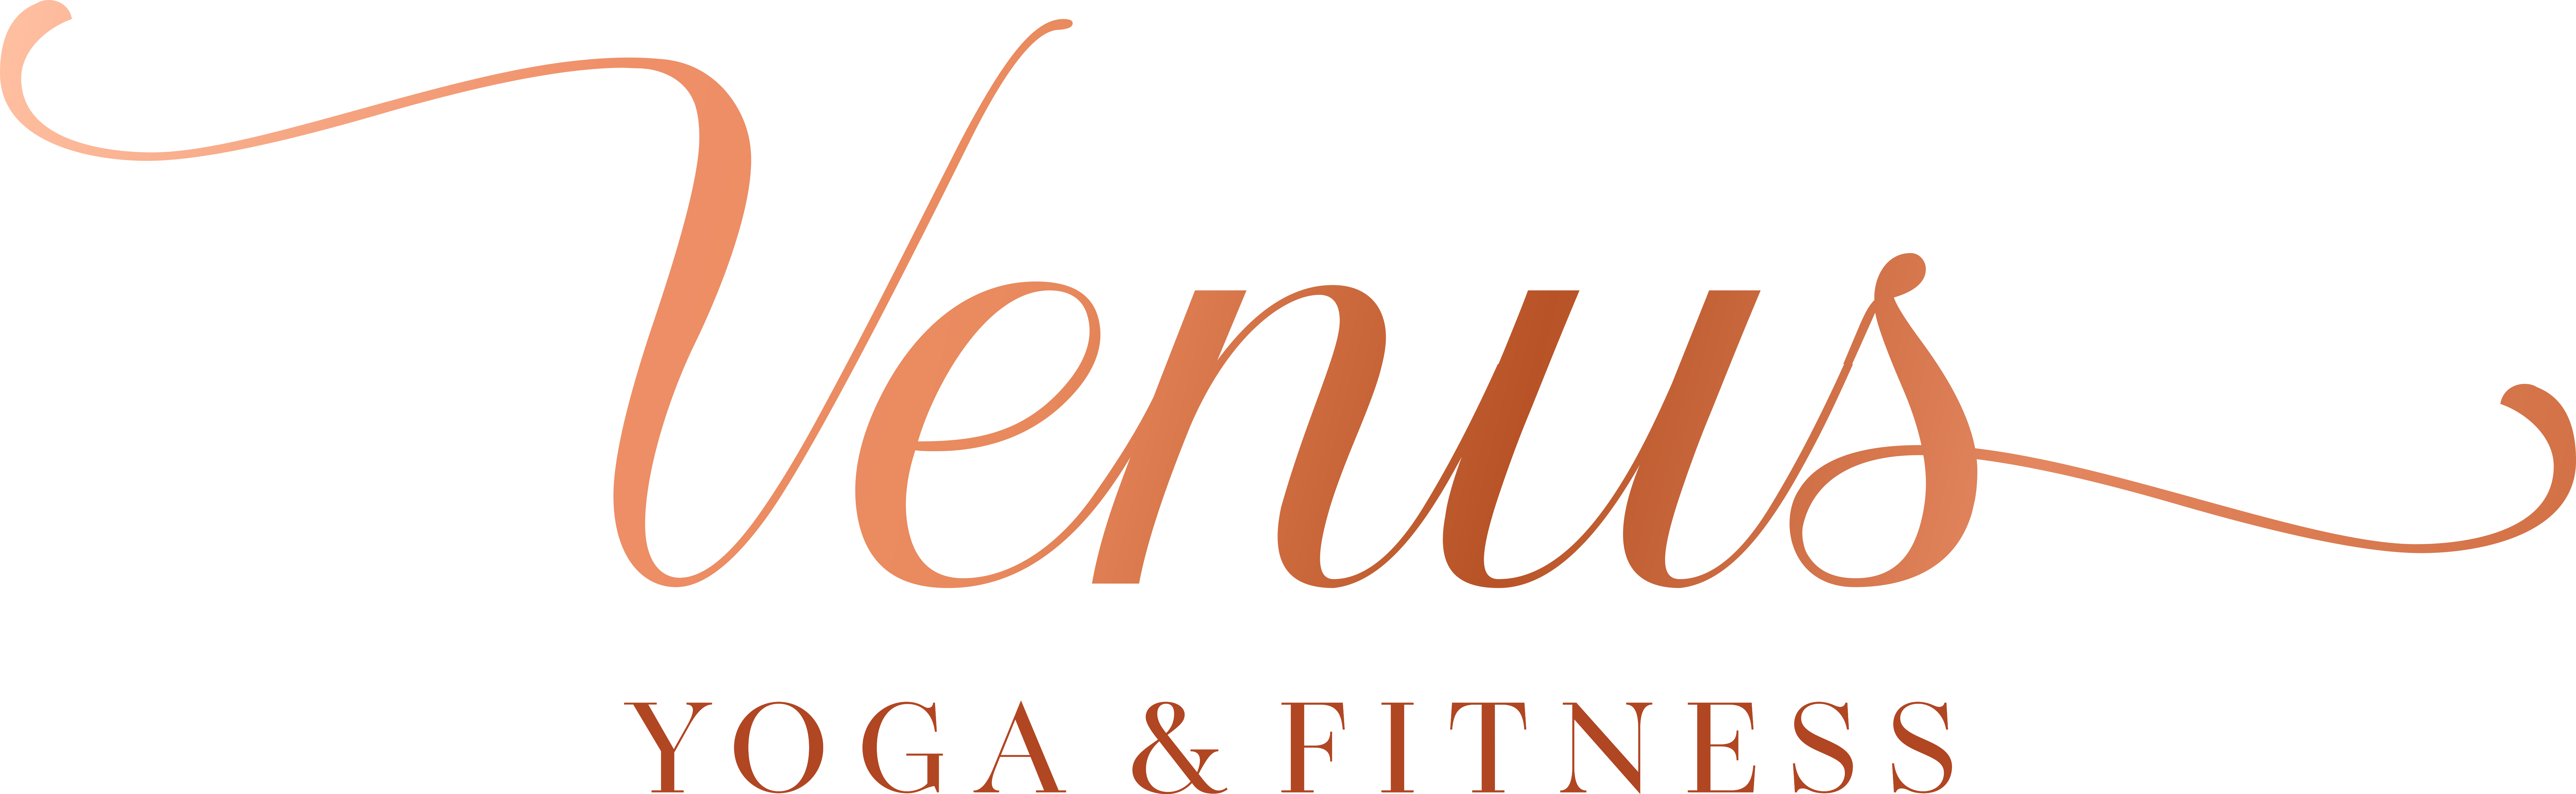 Venus Yoga & Fitness